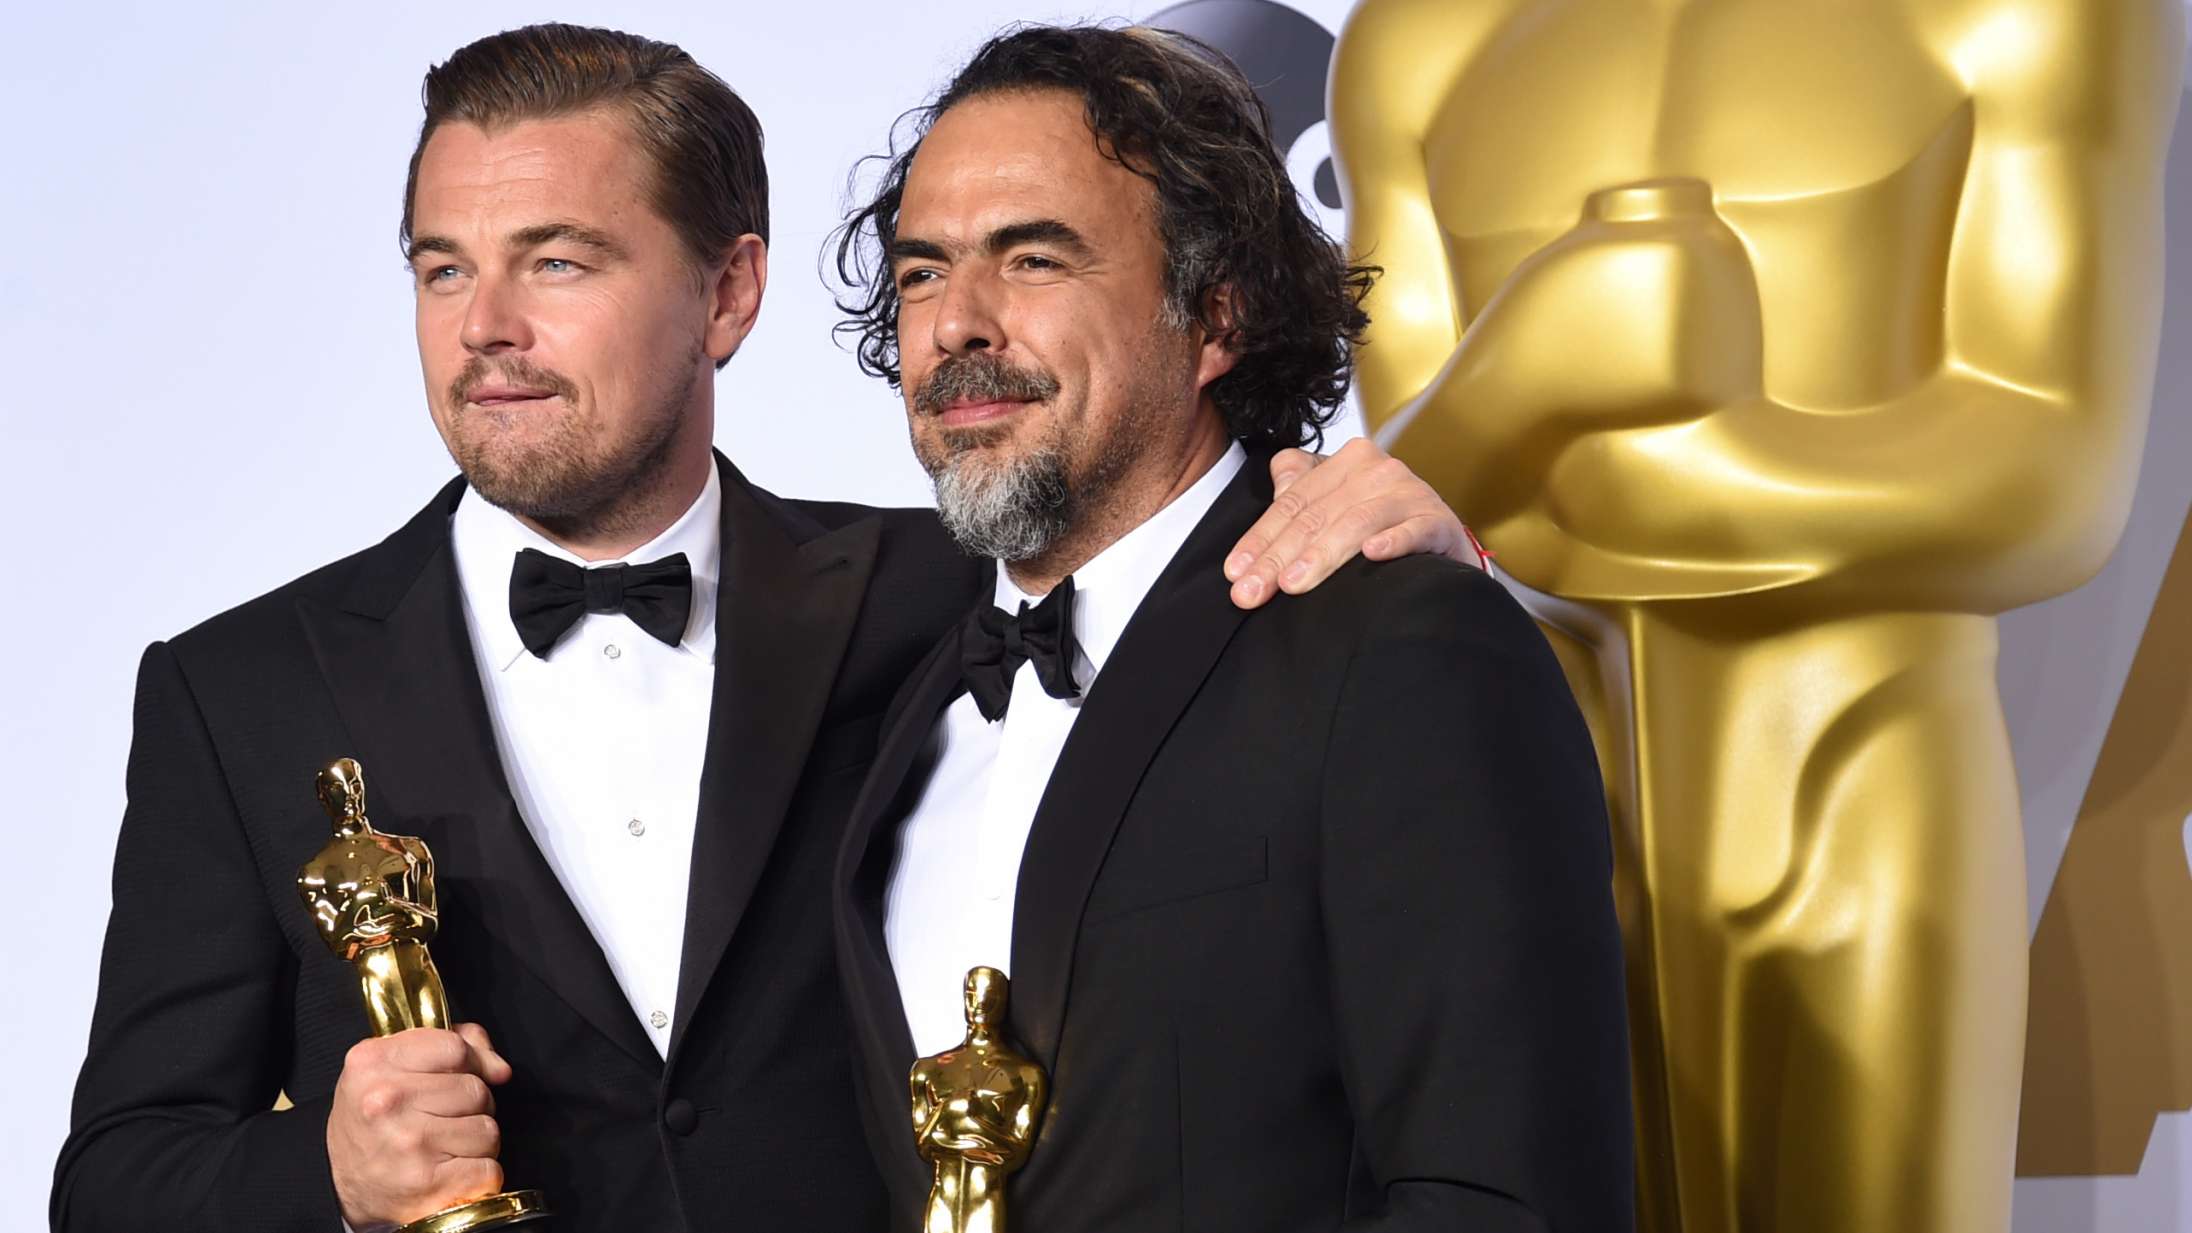 Alejandro González Iñárritu afslutter optagelser på første film siden ‘The Revenant’